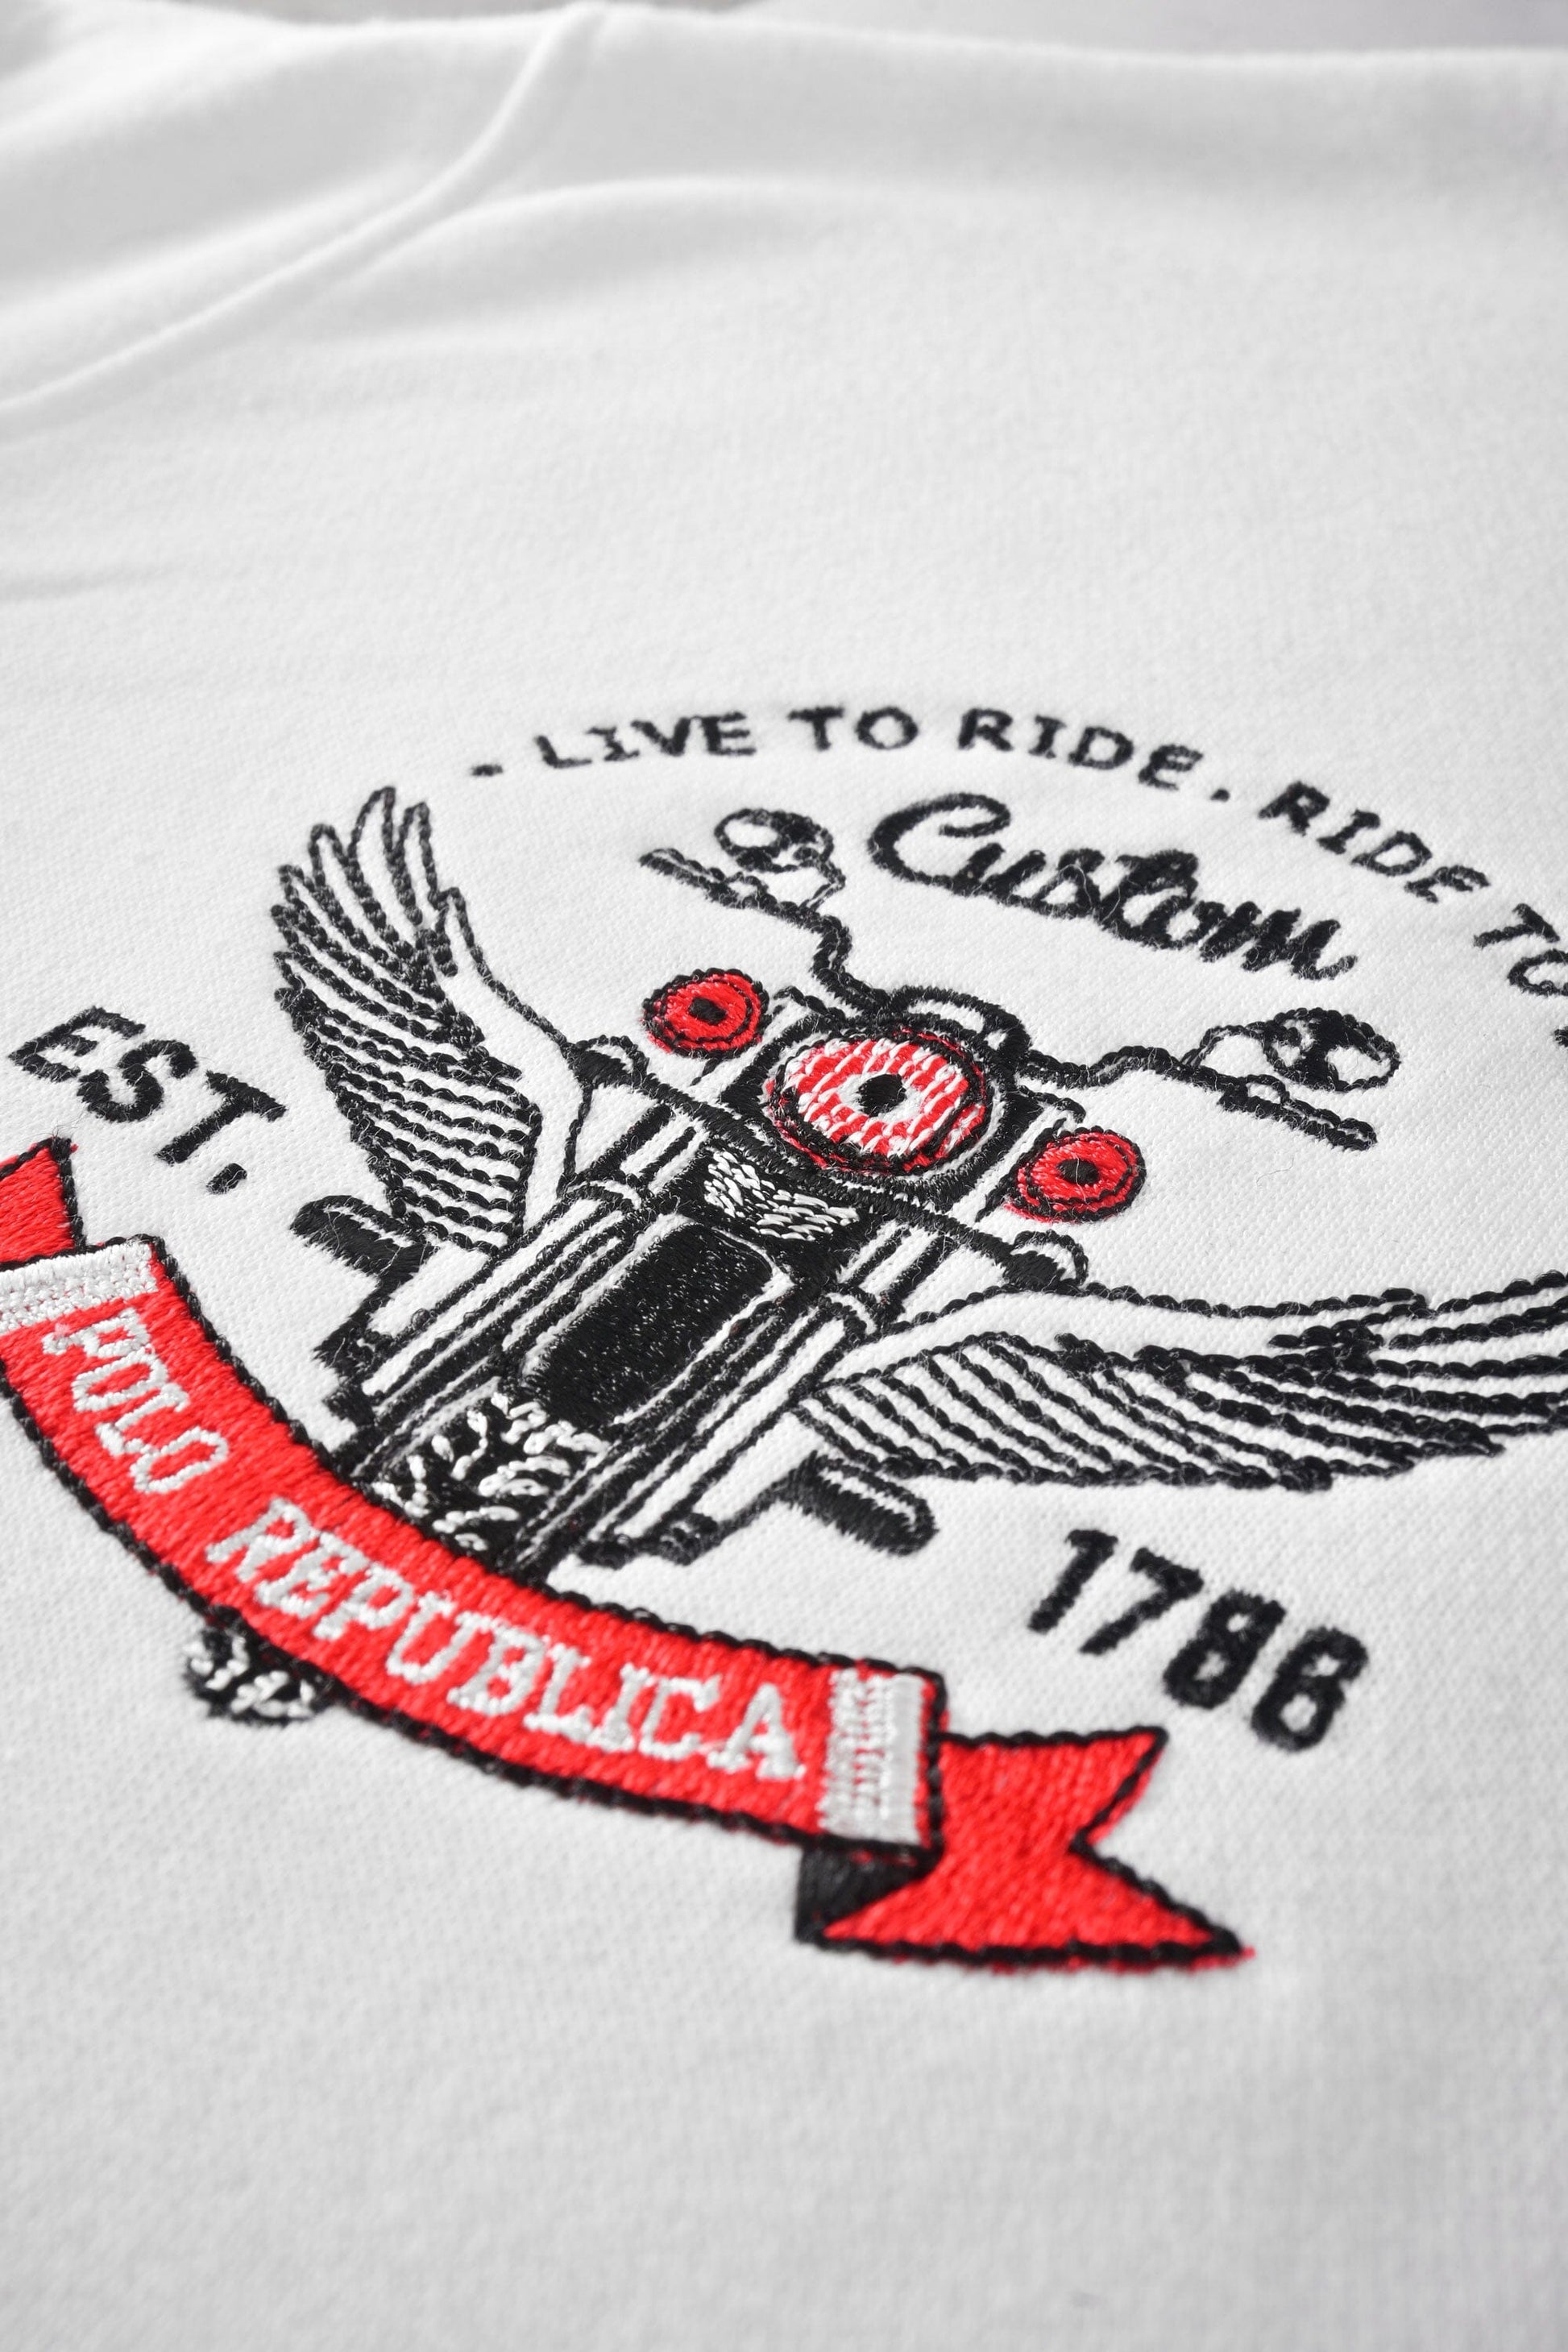 Polo Republica Men's Brooklyn 1965 Embroidered Quarter Zipper Sweat Shirt Men's Sweat Shirt Polo Republica 